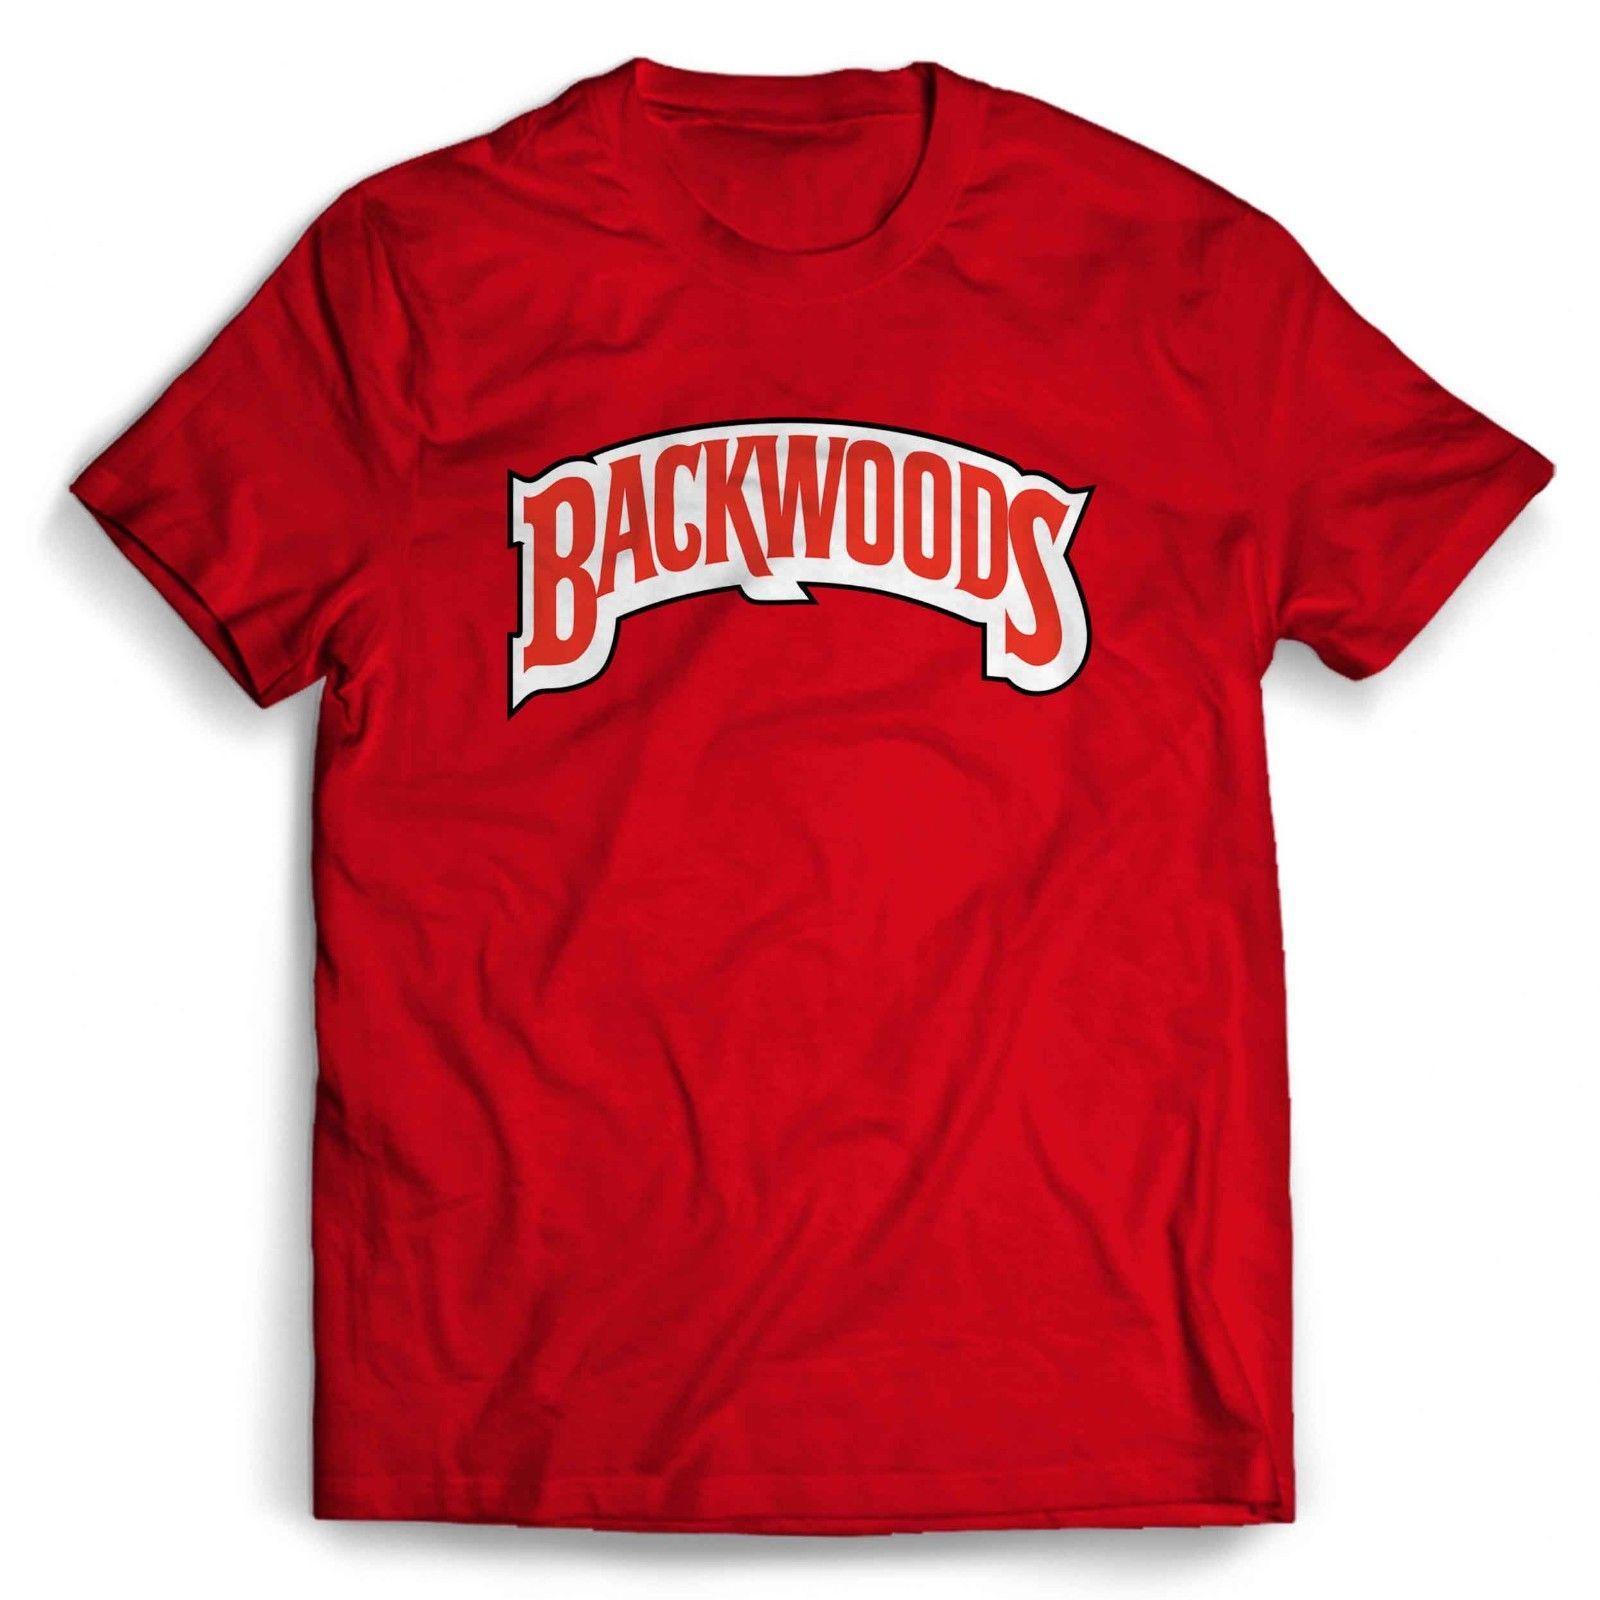 Backwoods Logo - Backwoods Logo Man's T-ShirtFunny Unisex Casual Tee Gift Free ...